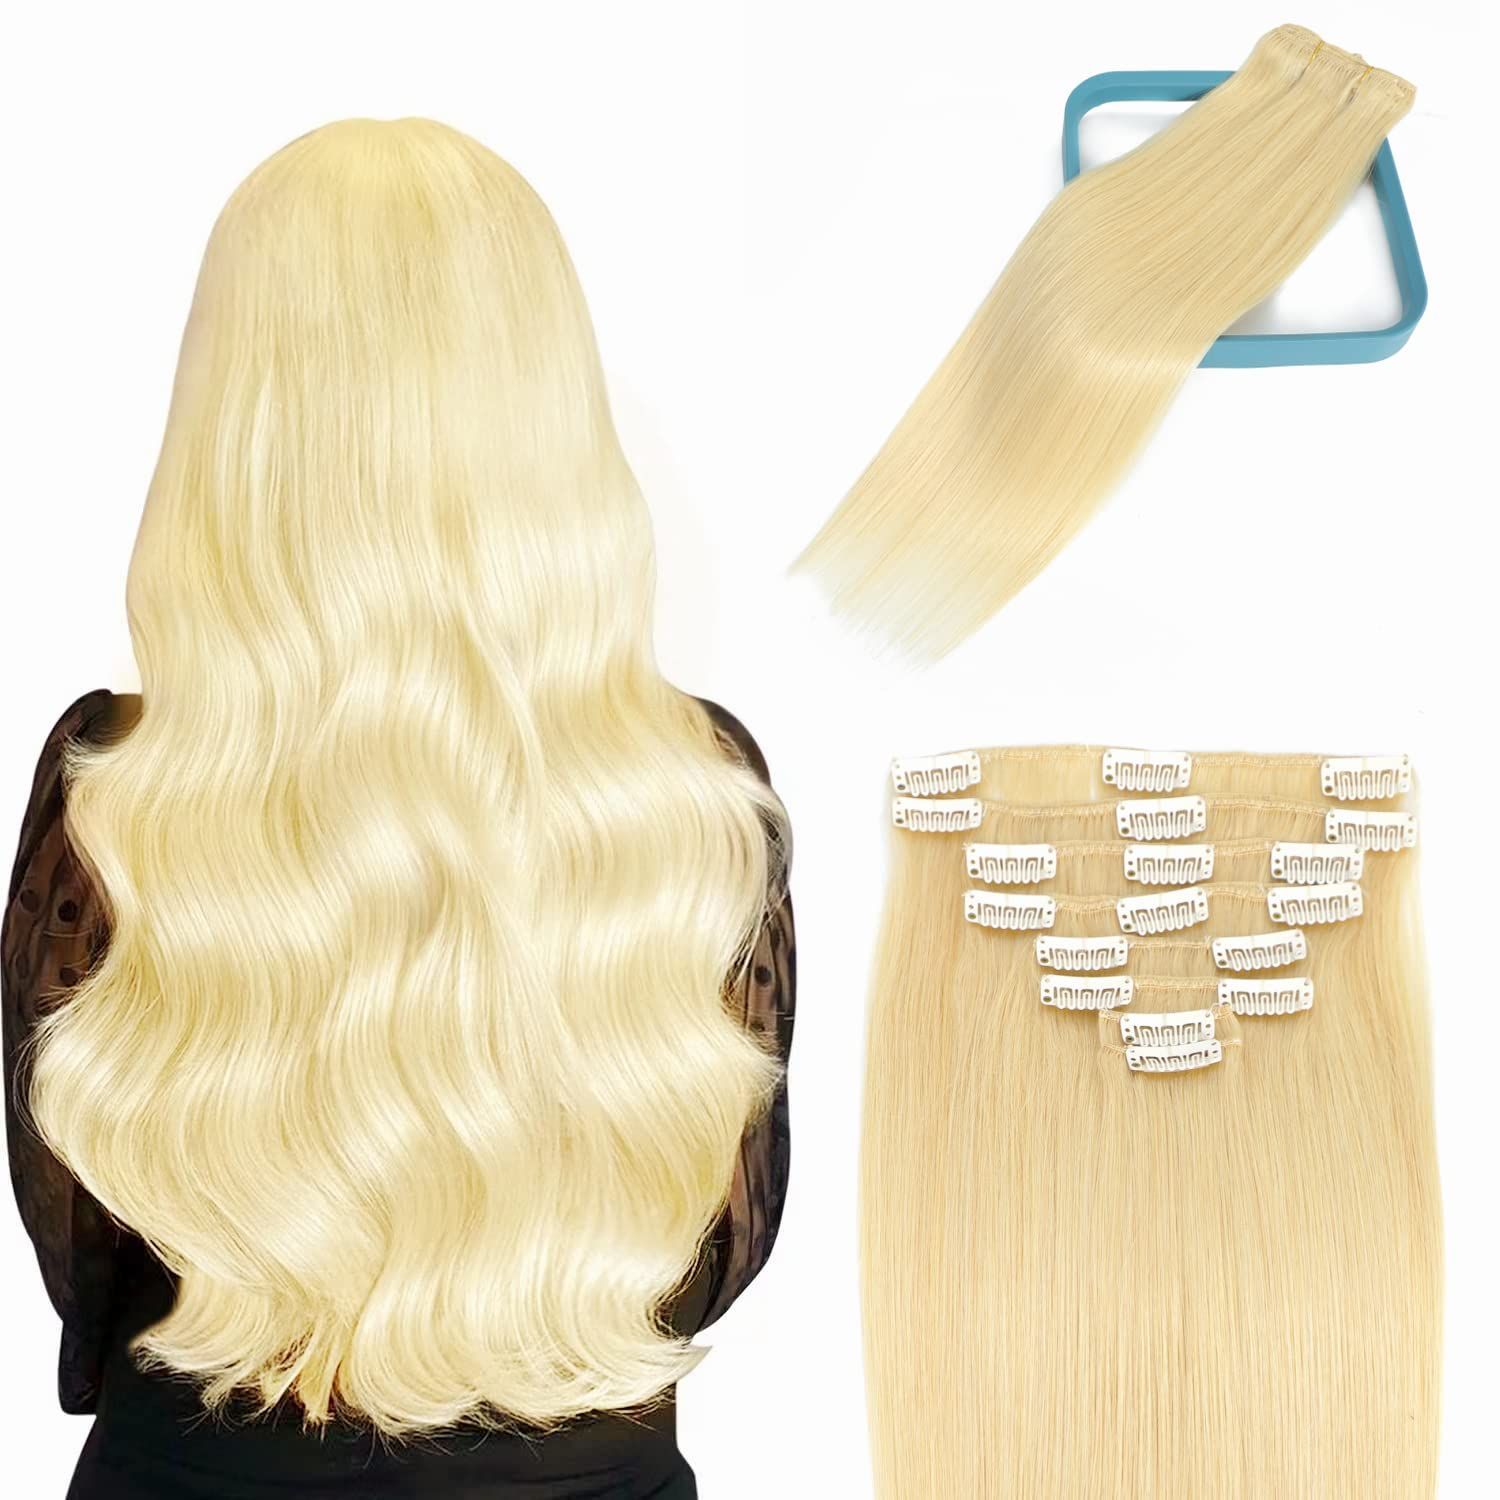 Накладные волосы на натуральной заколке Удлиненный парик длиной 60 см весом 120 г - купить по низкой цене в интернет-магазине OZON (1030890226)